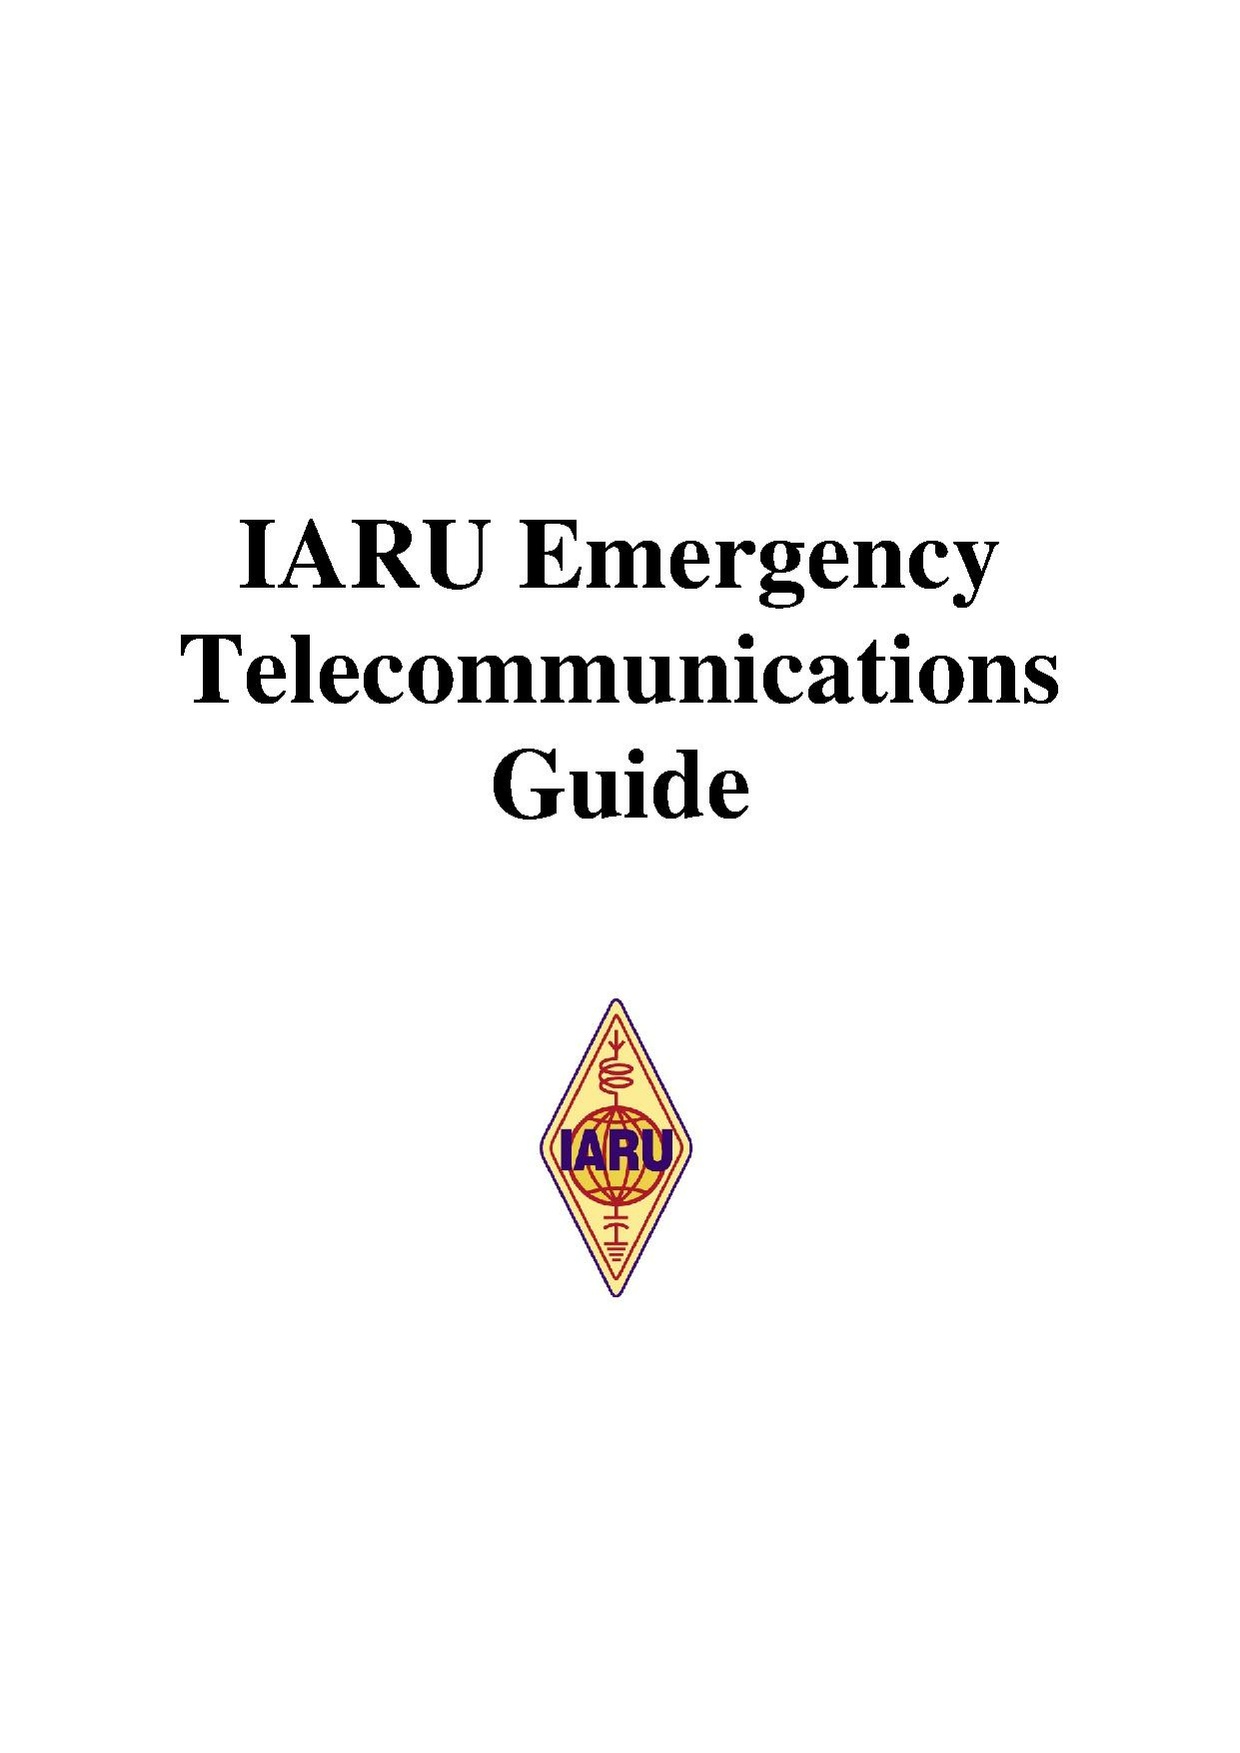 Iaru emergency telecommunications guide.pdf